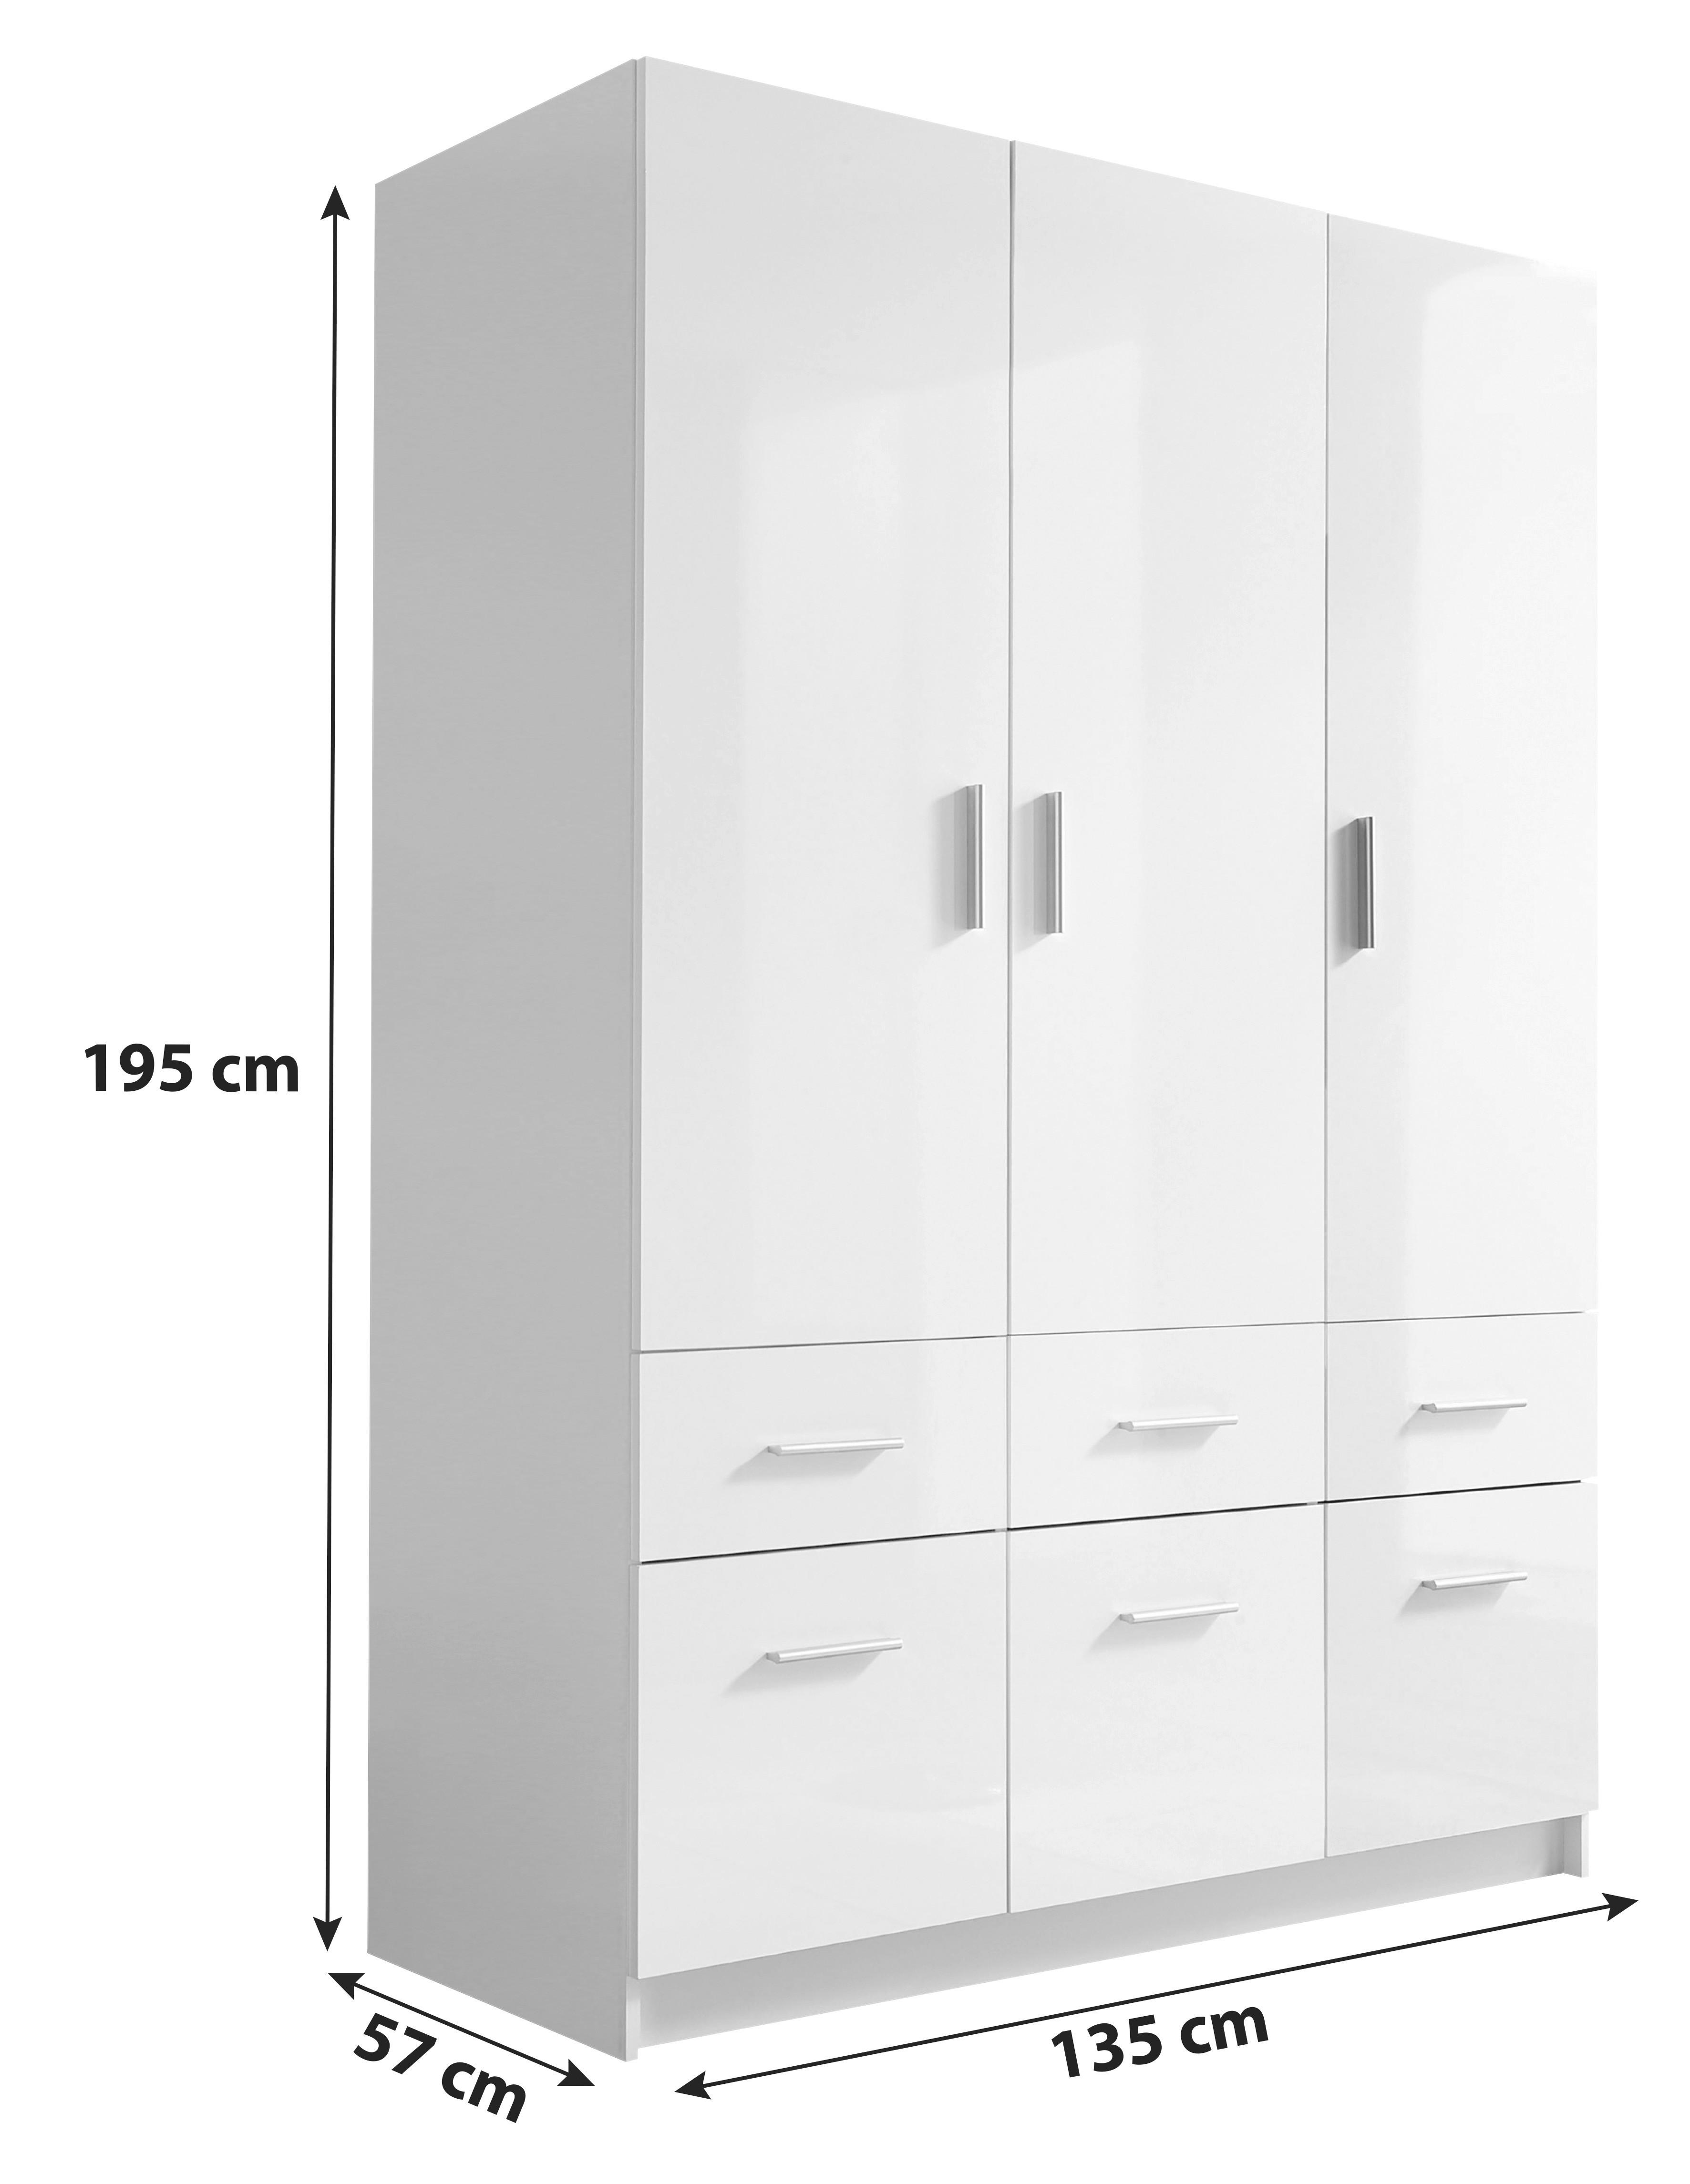 Drehtürenschrank mit Laden 135cm Hagen, Weiss - Eichefarben/Weiß, Basics, Holzwerkstoff (135/195/57cm) - Livetastic